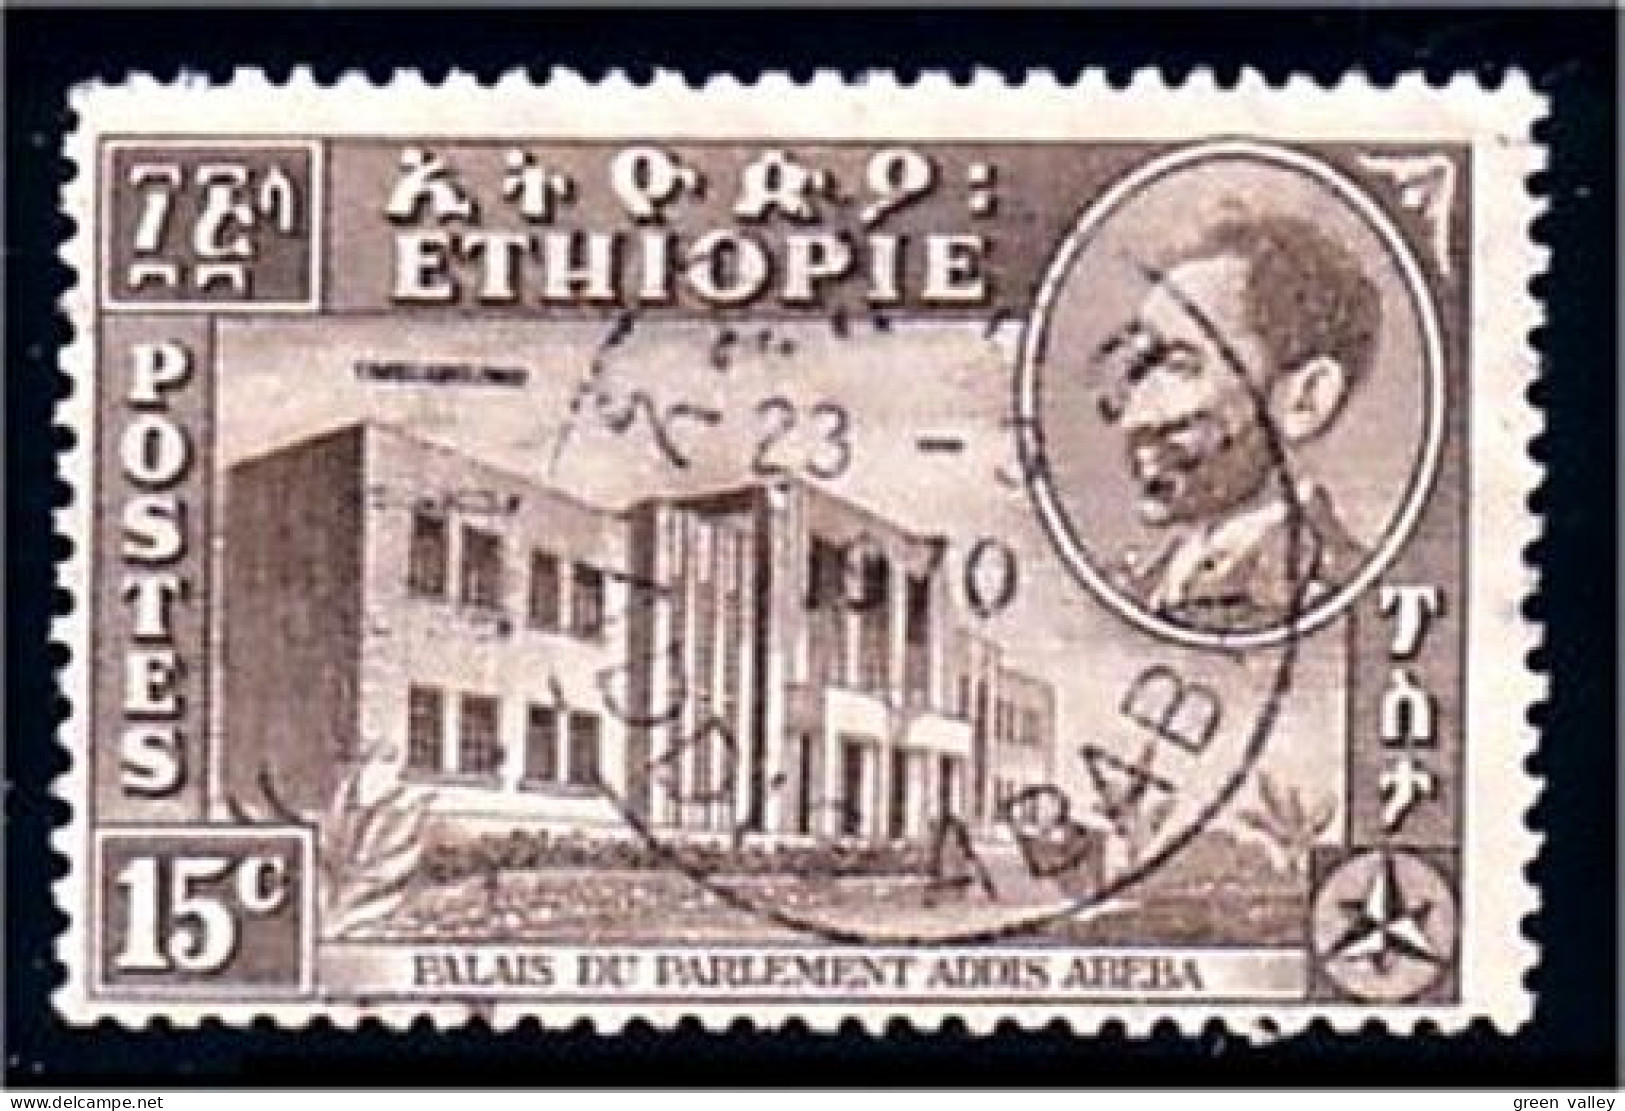 324 Ethiopie (ETH-107) - Etiopia